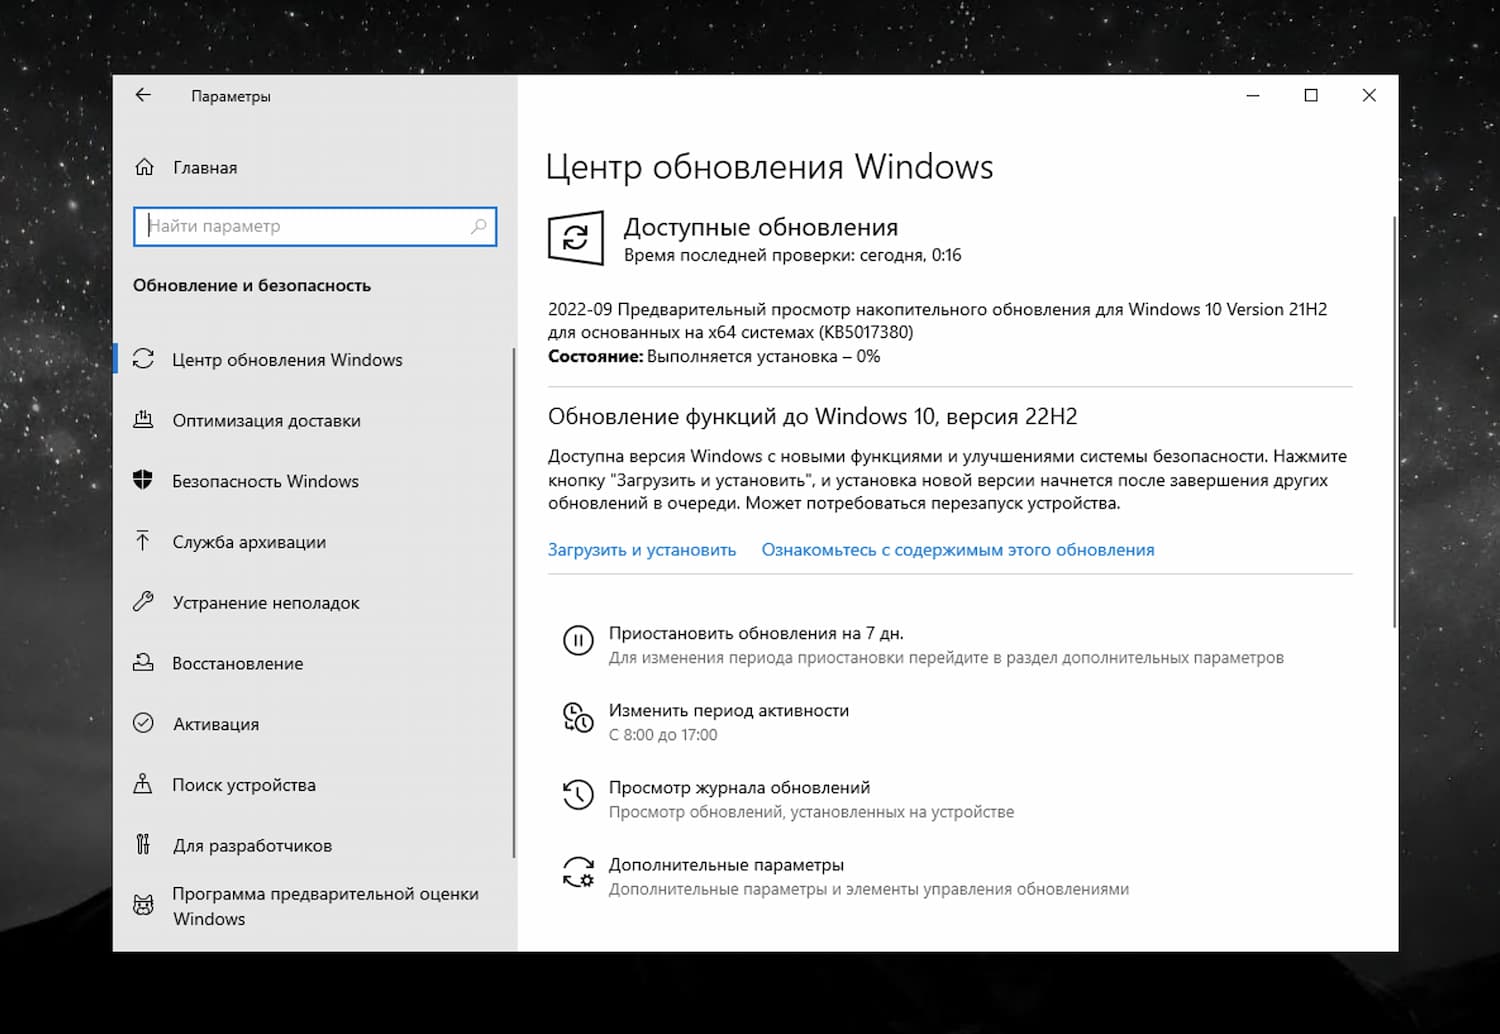 Предварительные обновления windows 10. Накопительное обновление для Windows 10. Windows 10, версия 22h2. Что такое накопительное обновление для виндовс. Обновление виндовс 10 22h2.